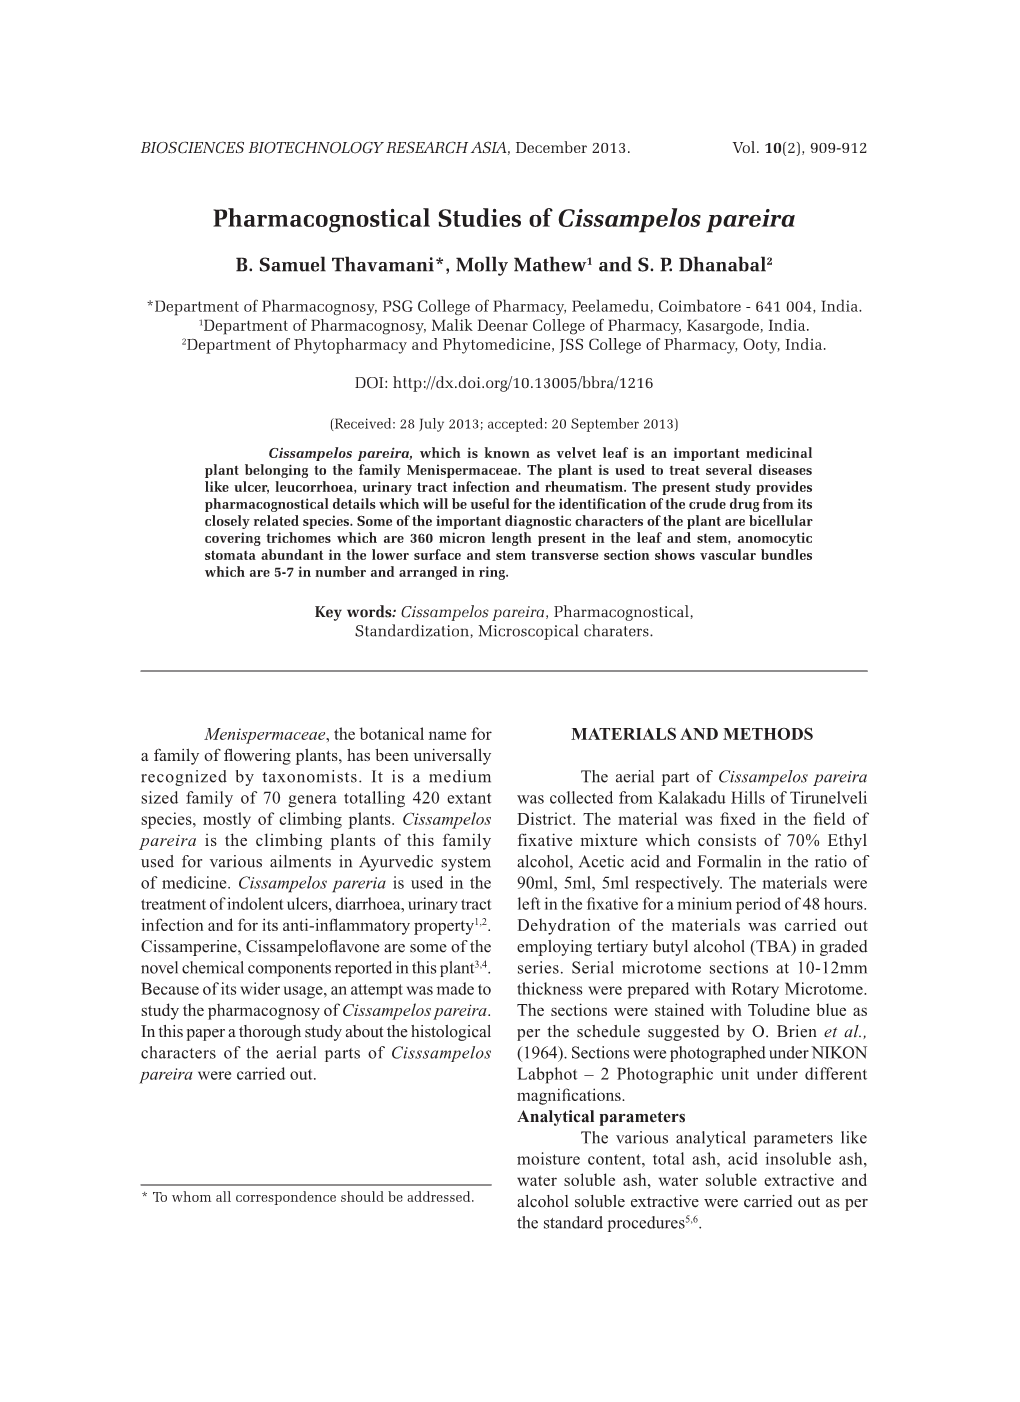 Pharmacognostical Studies of Cissampelos Pareira